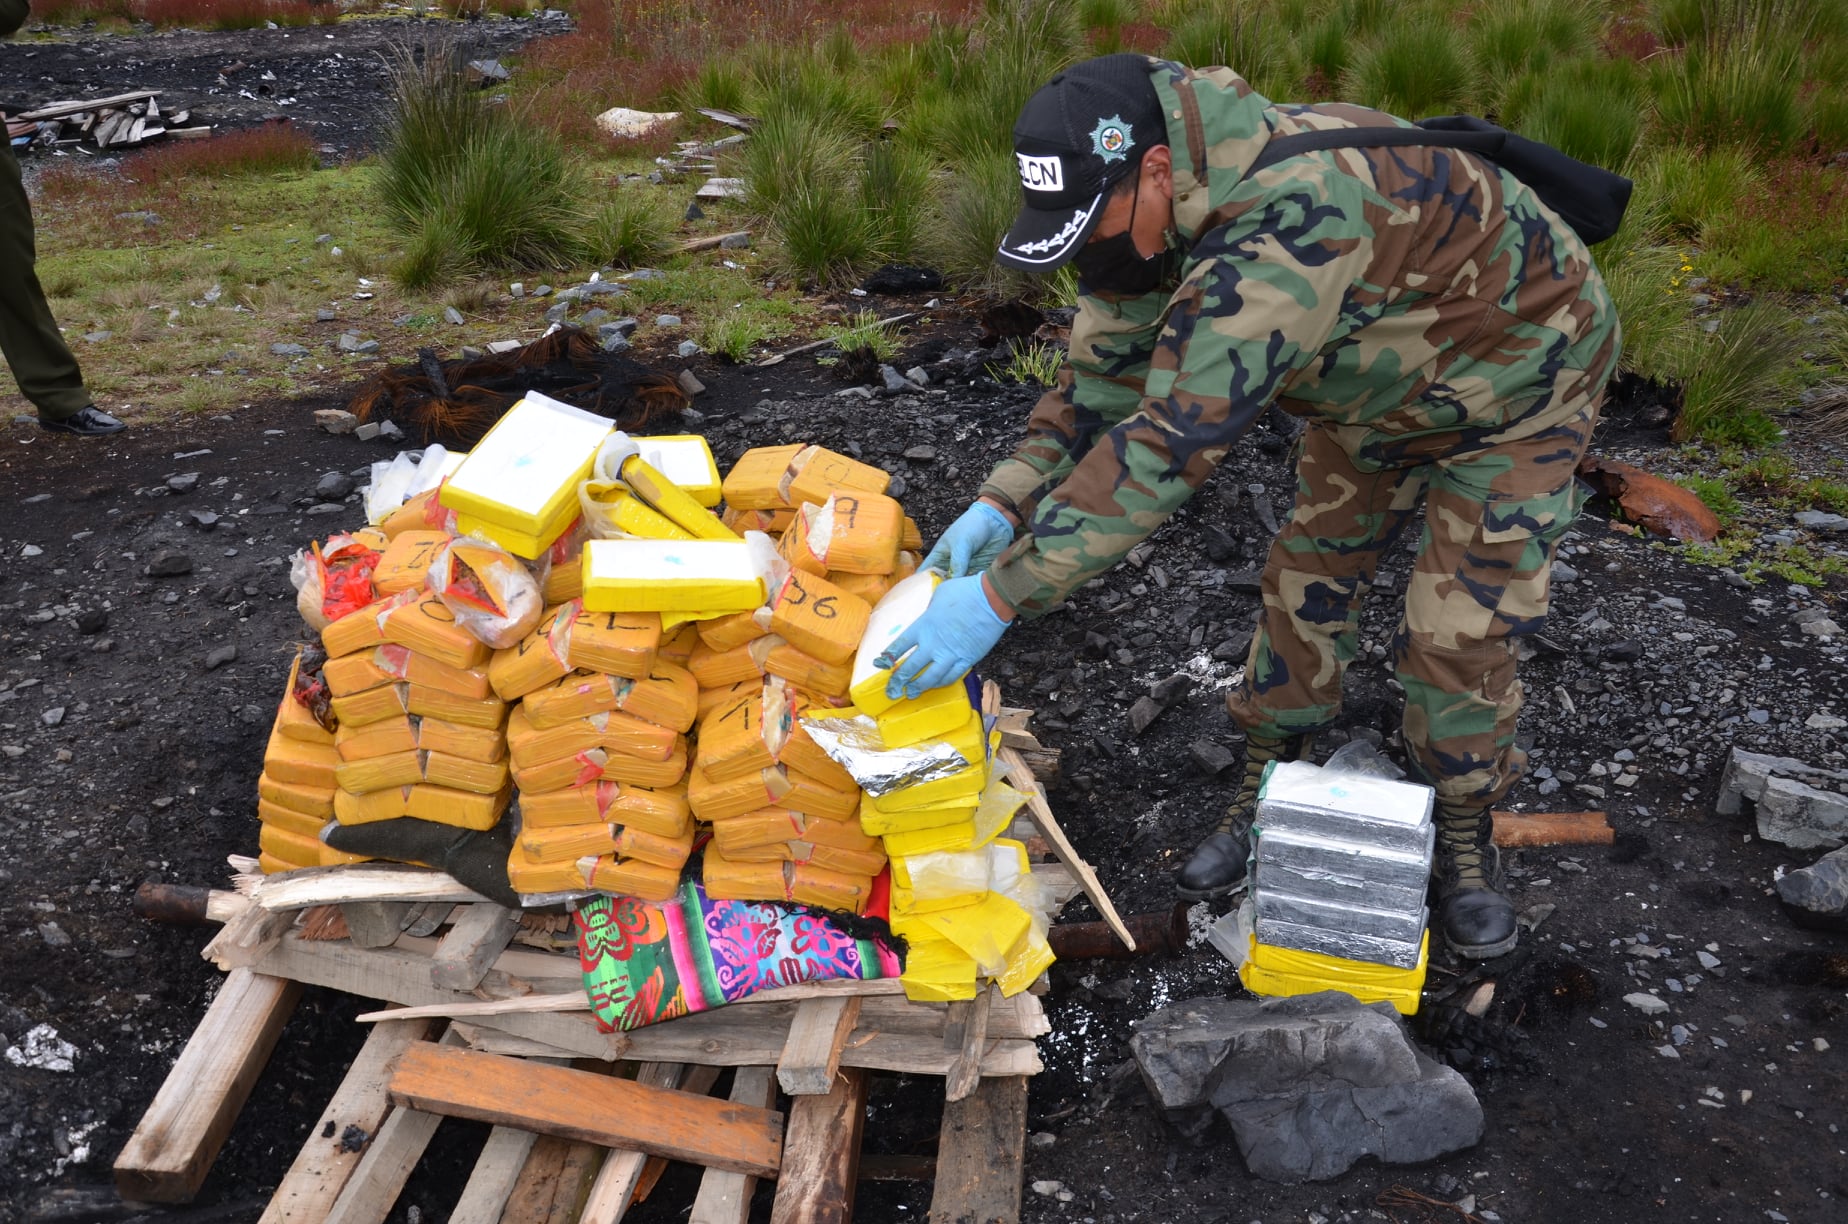 Bolivia: agentes antinarcóticos eliminan más de 2 toneladas de drogas